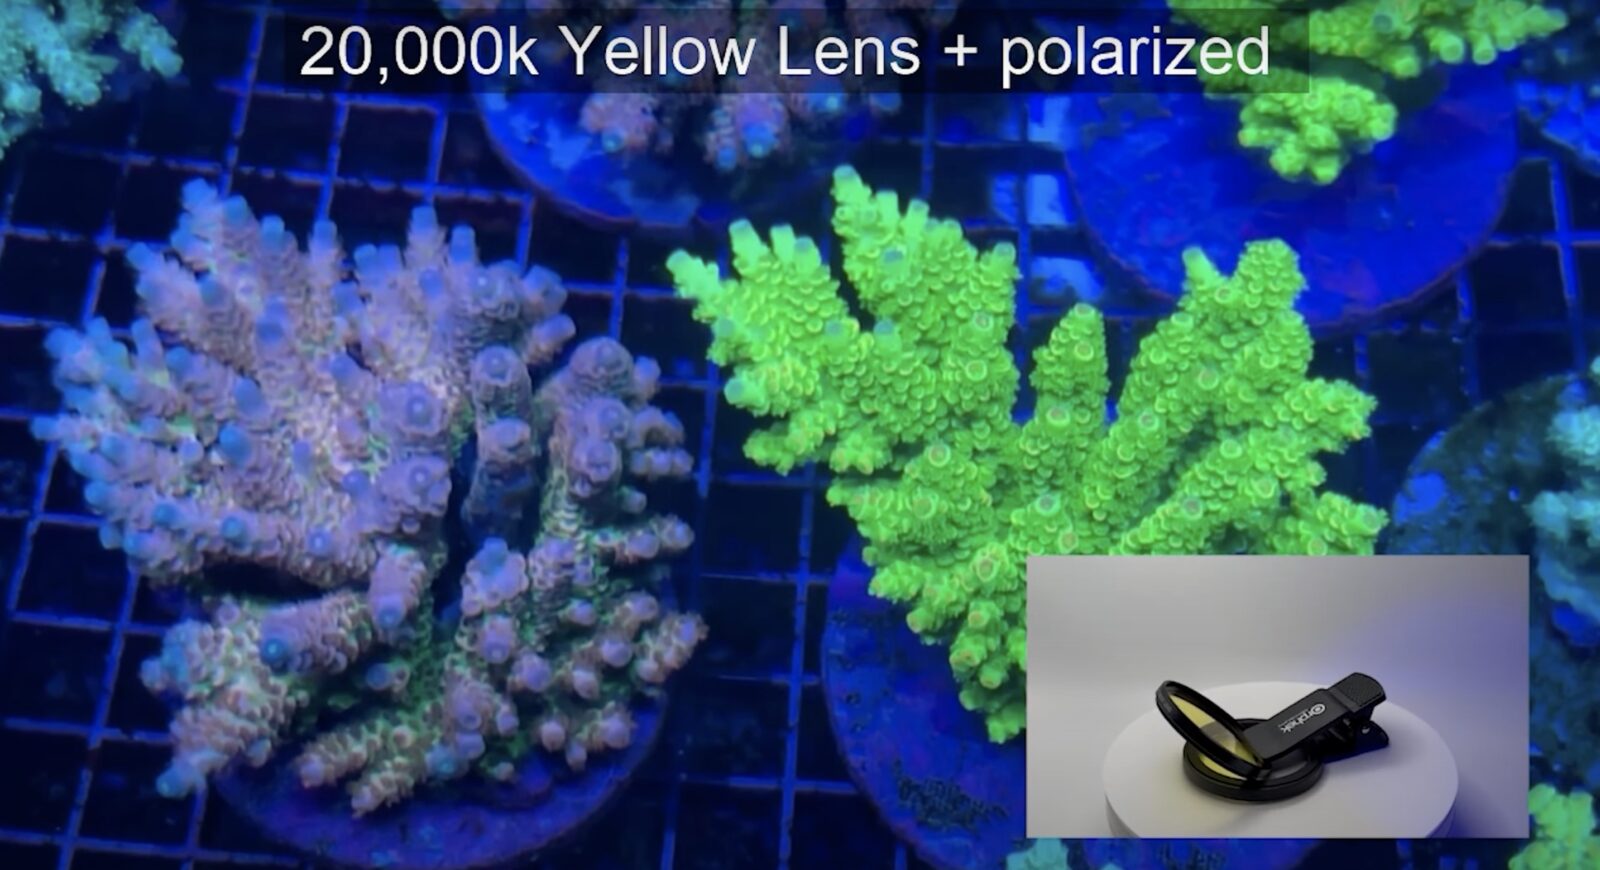 filtro amarelo orphek e coral polarizado